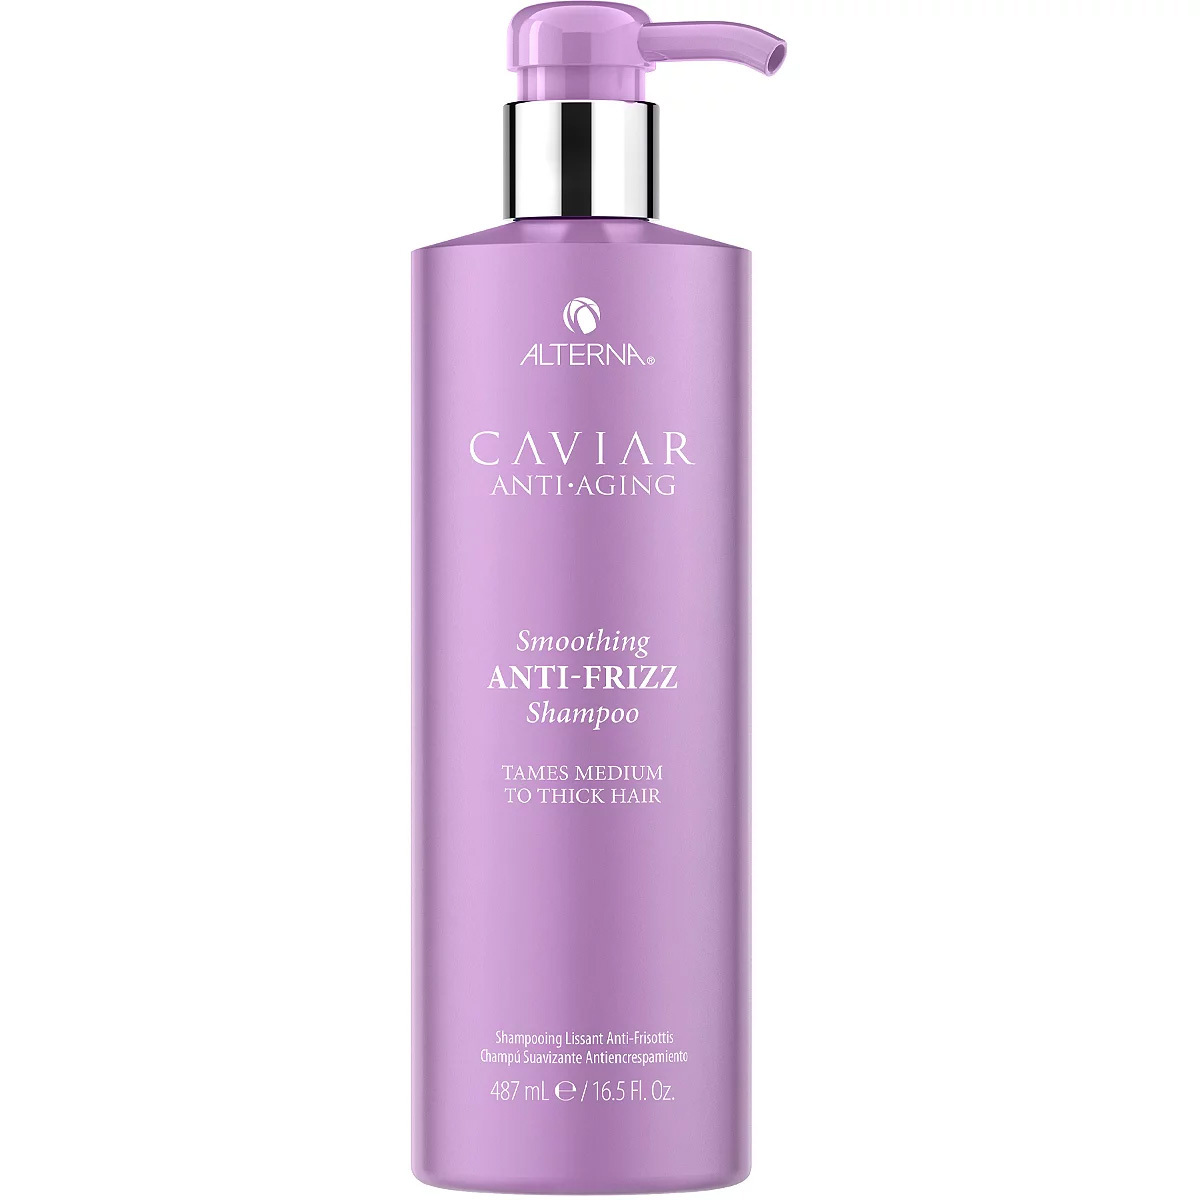 Alterna Caviar Anti-Aging Smoothing Anti-Frizz Shampoo 16.5oz